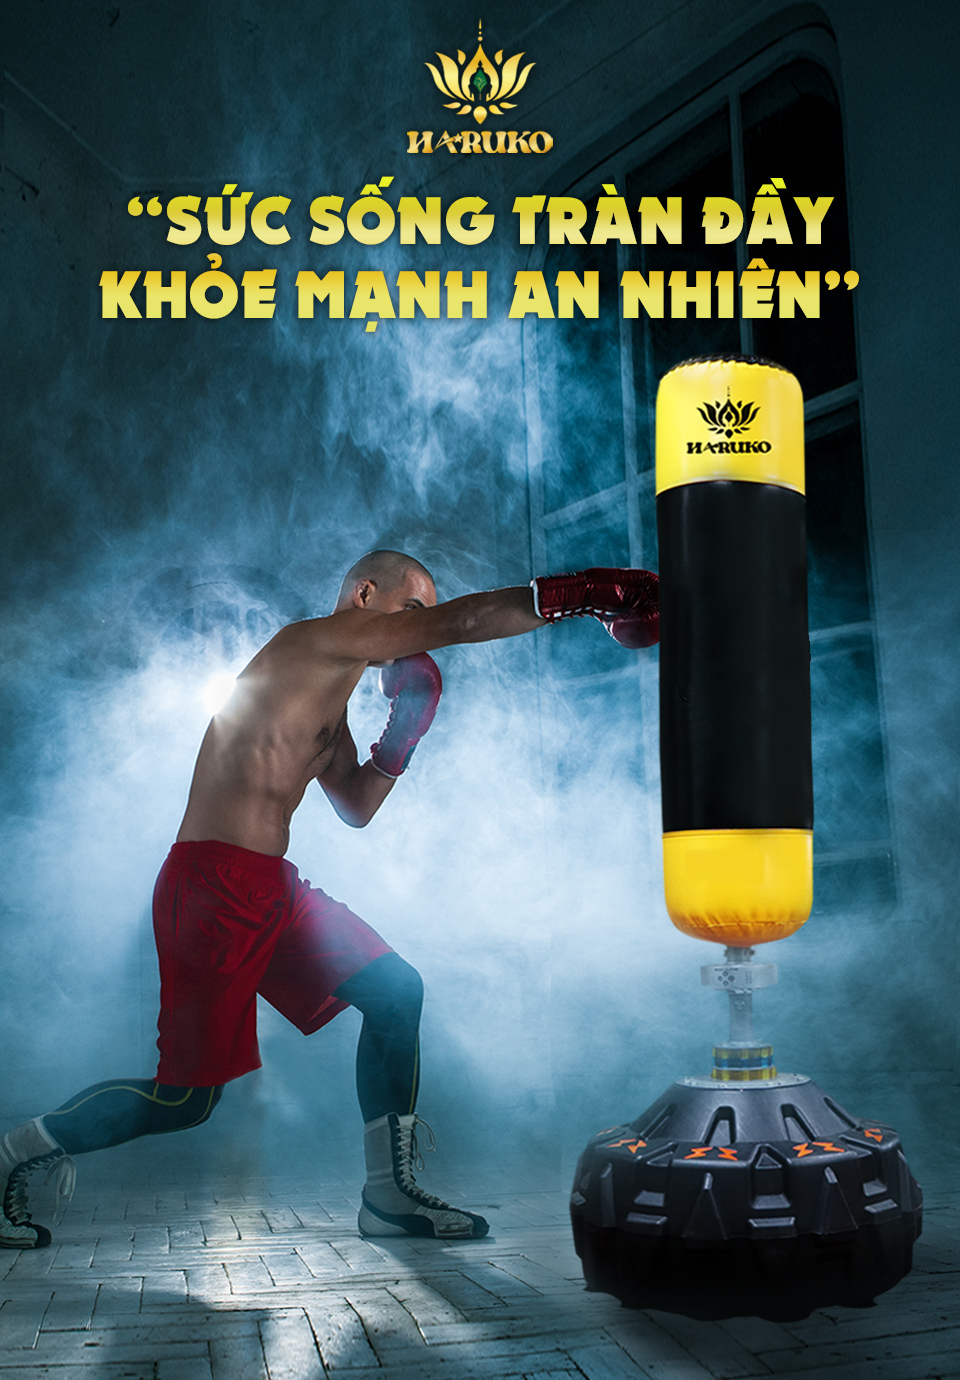 Trụ đấm bốc Boxing là sản phẩm tuyệt vời để luyện tập và tăng cường sức khỏe đối với  mọi lứa tuổi sử dụng